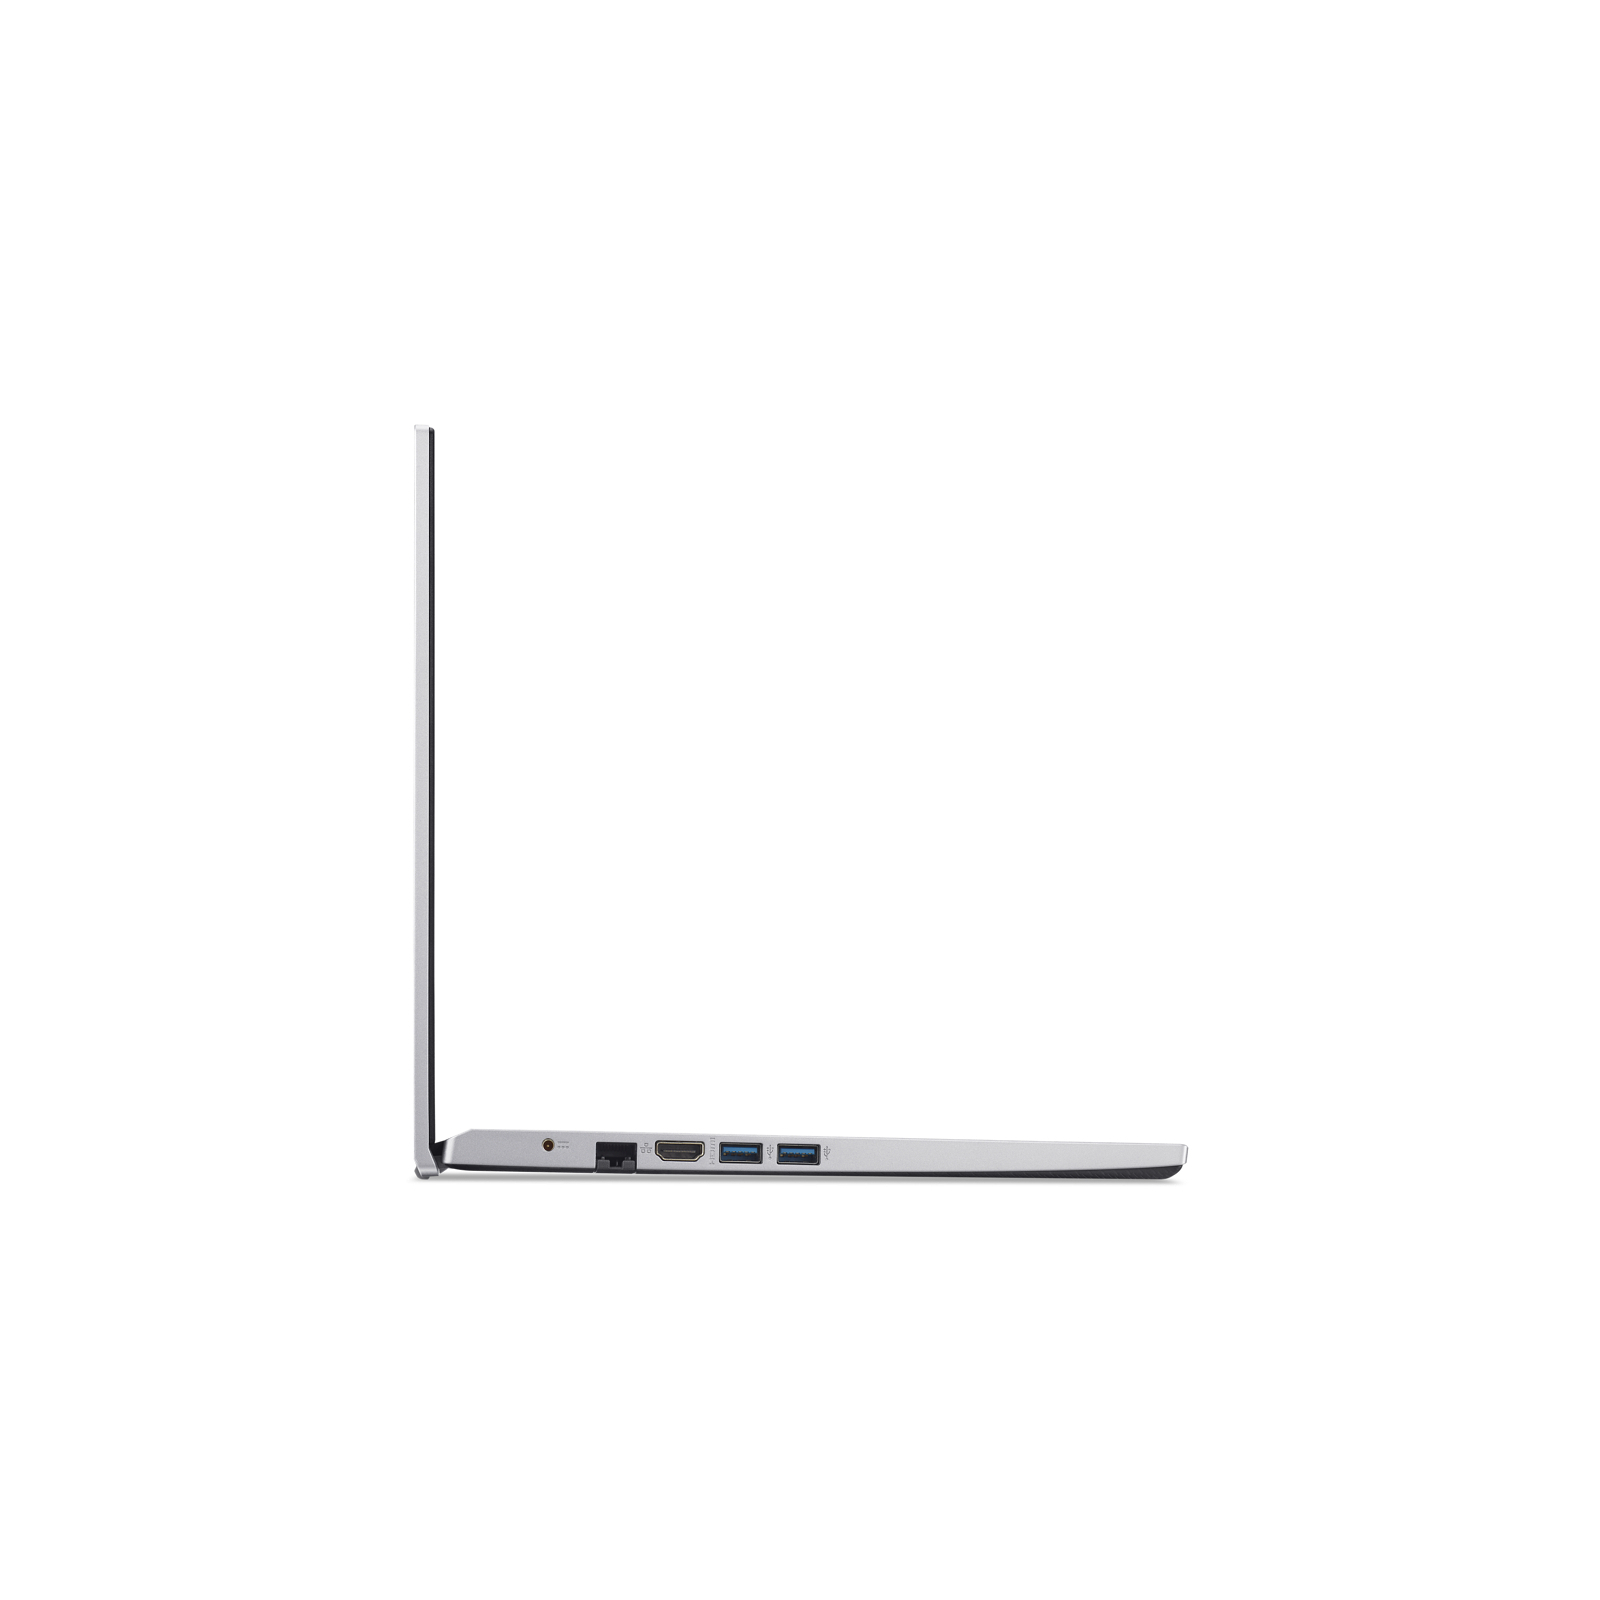 Ноутбук Acer Aspire 3 A315-59-51WK (NX.K6TEU.013) изображение 7